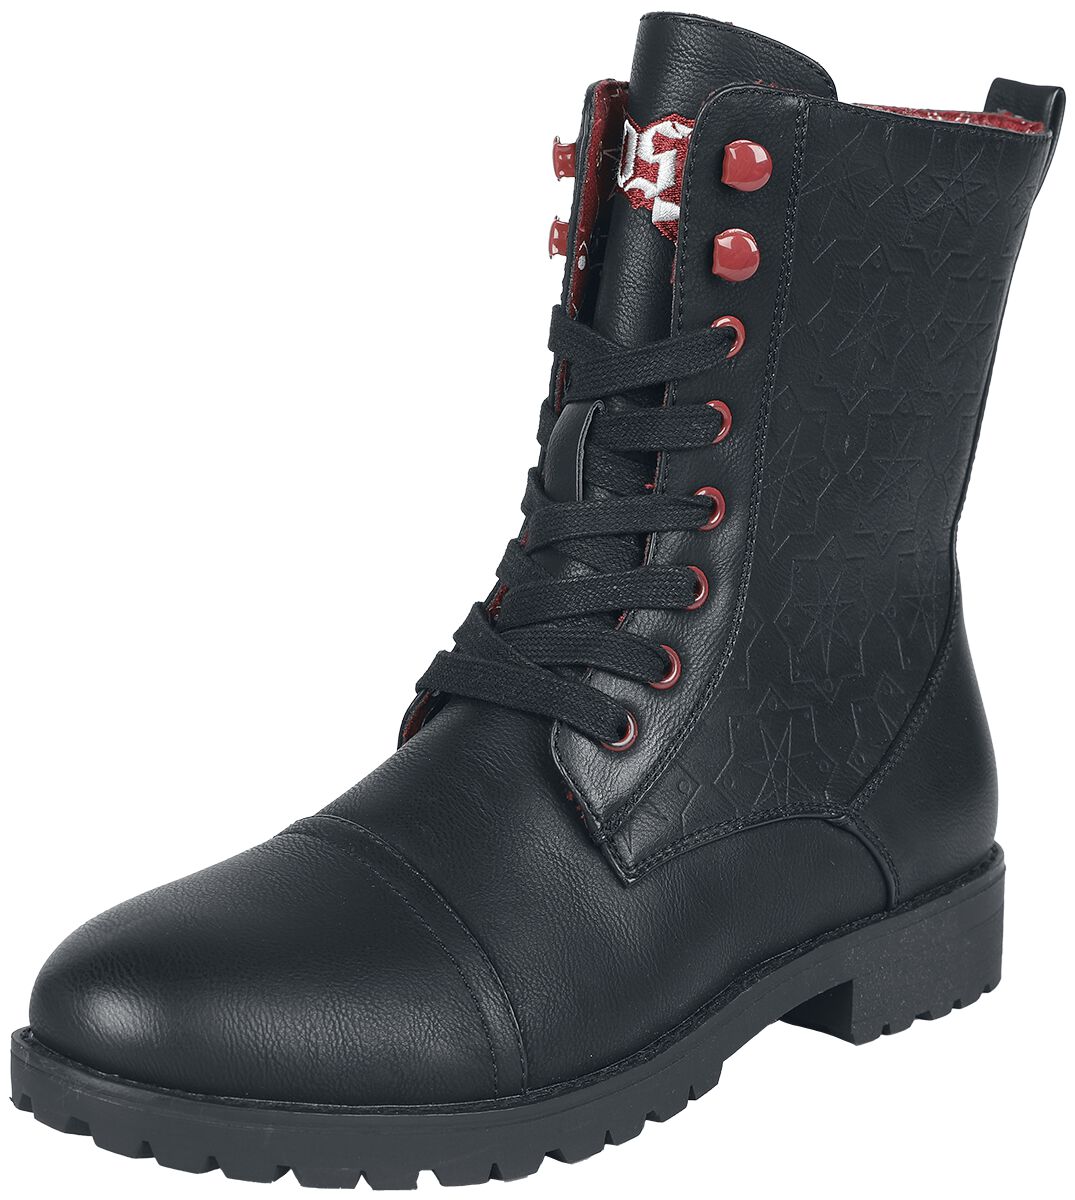 Ghost Boot - EMP Signature Collection - EU37 bis EU42 - für Damen - Größe EU38 - schwarz  - EMP exklusives Merchandise!